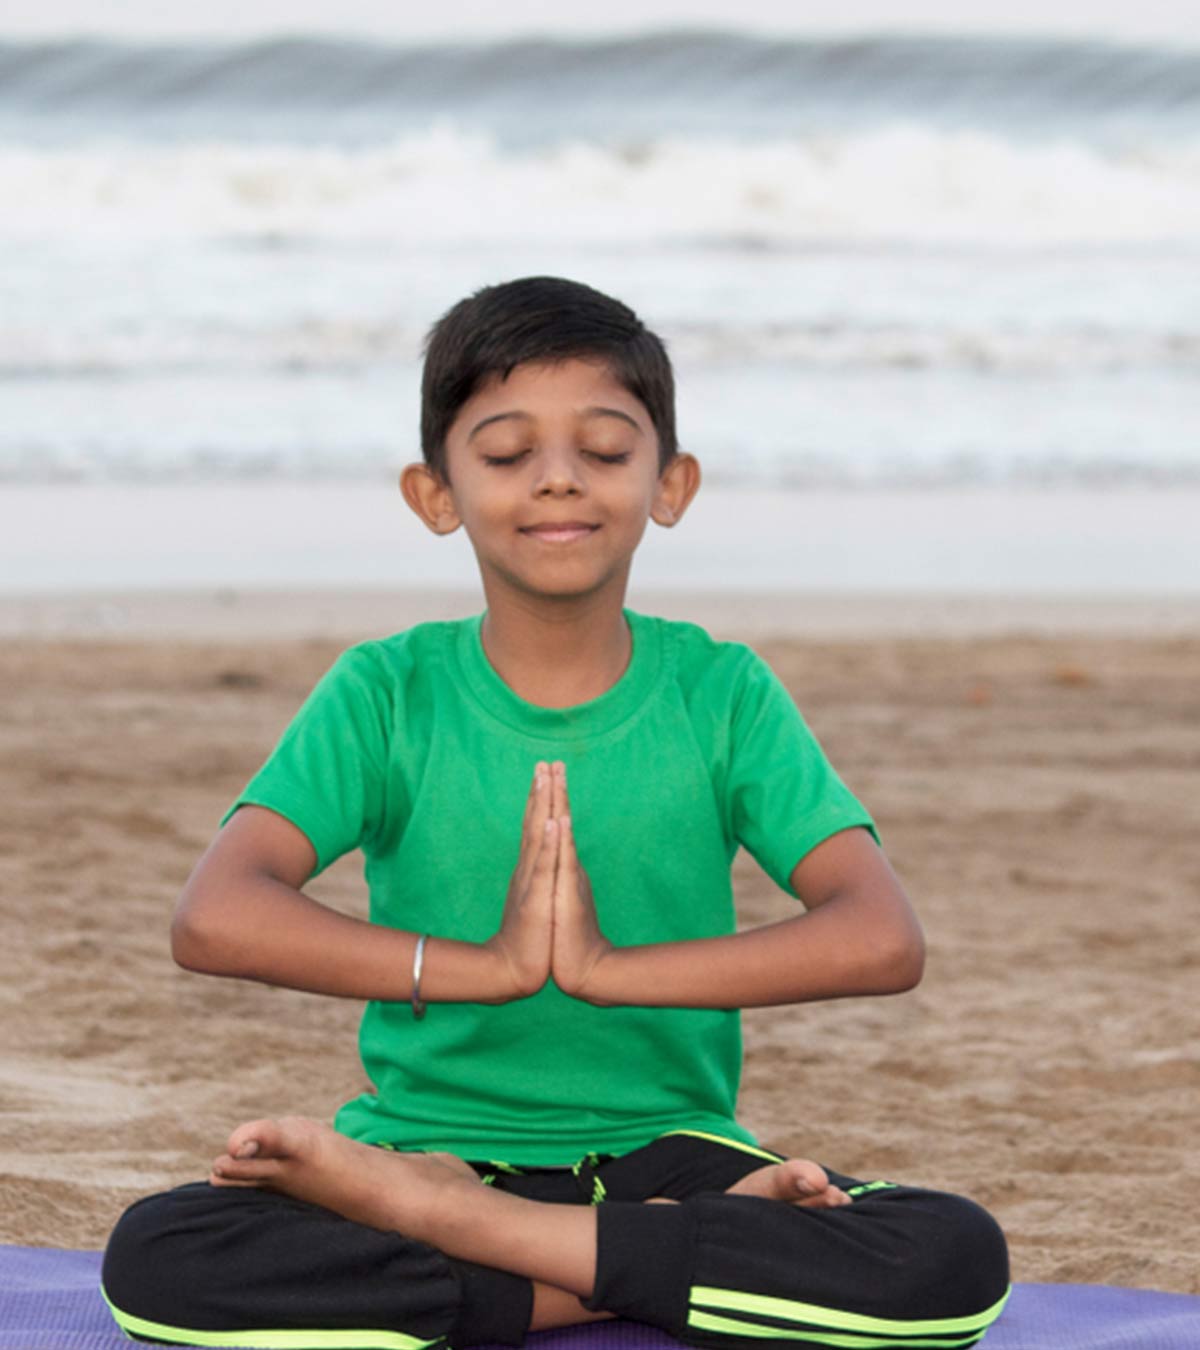 बच्चों के लिए योग के फायदे व 12 आसान योगासन | Importance Of Yoga For Students In Hindi